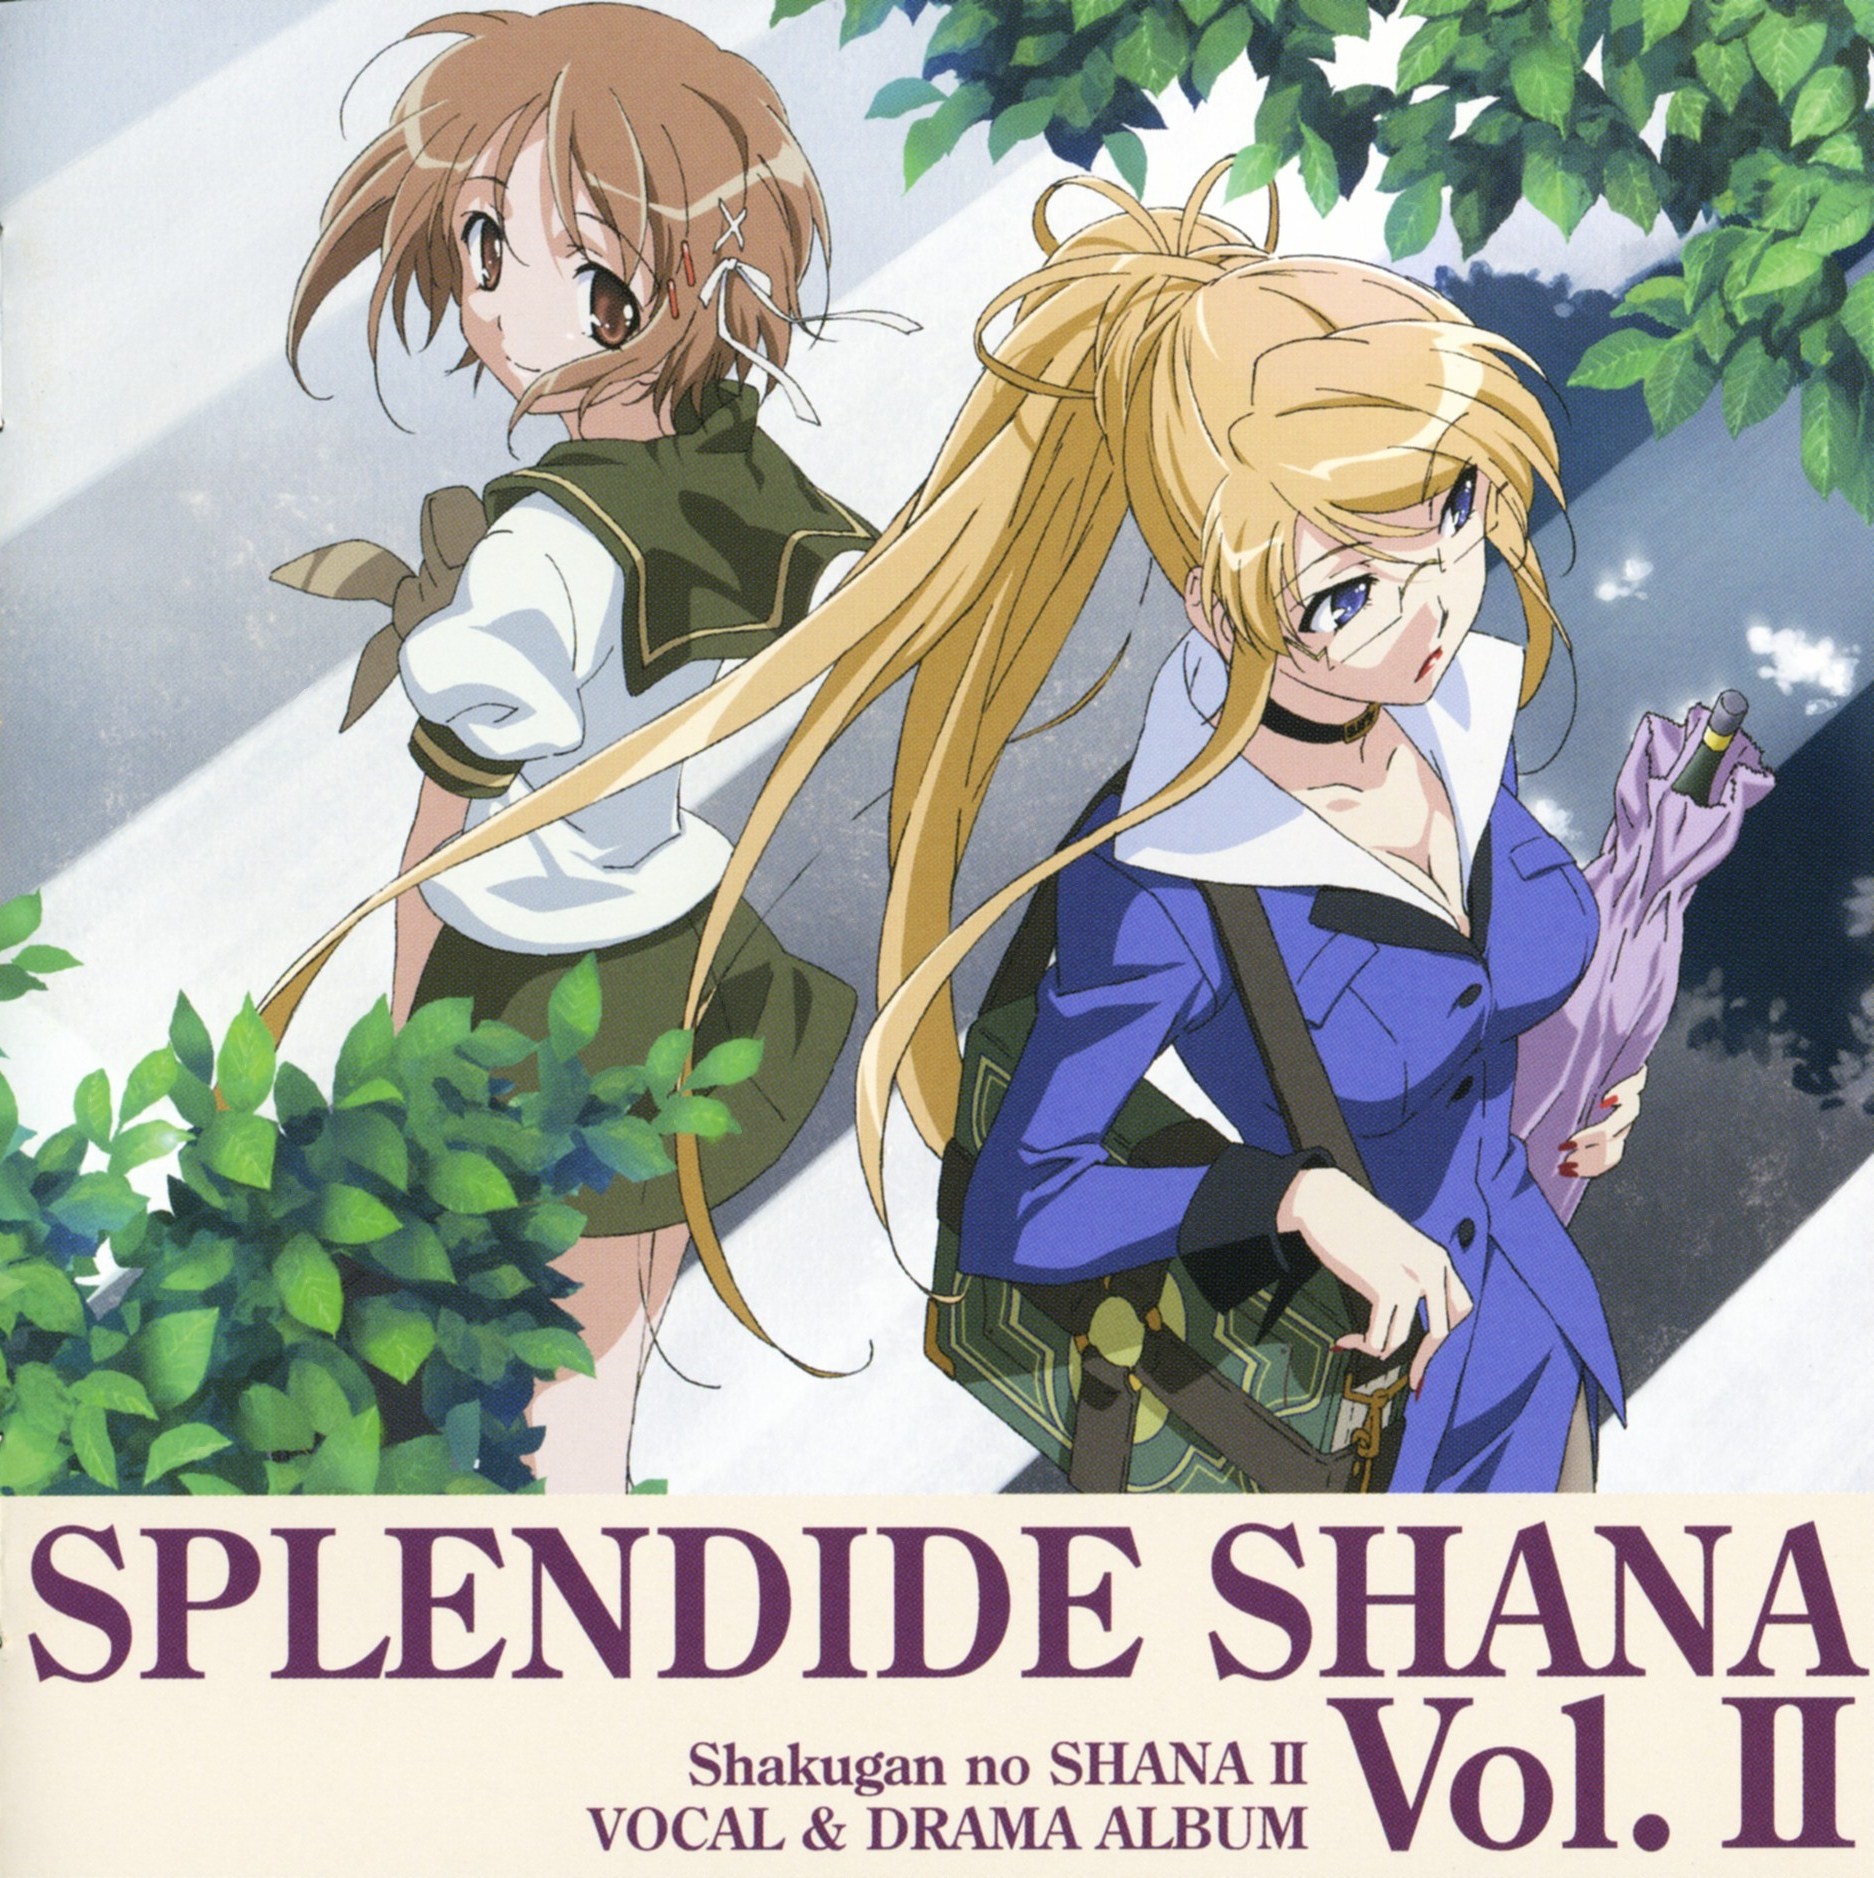 Shakugan no Shana II Splendide Shana Vol. II | Shakugan no Shana 